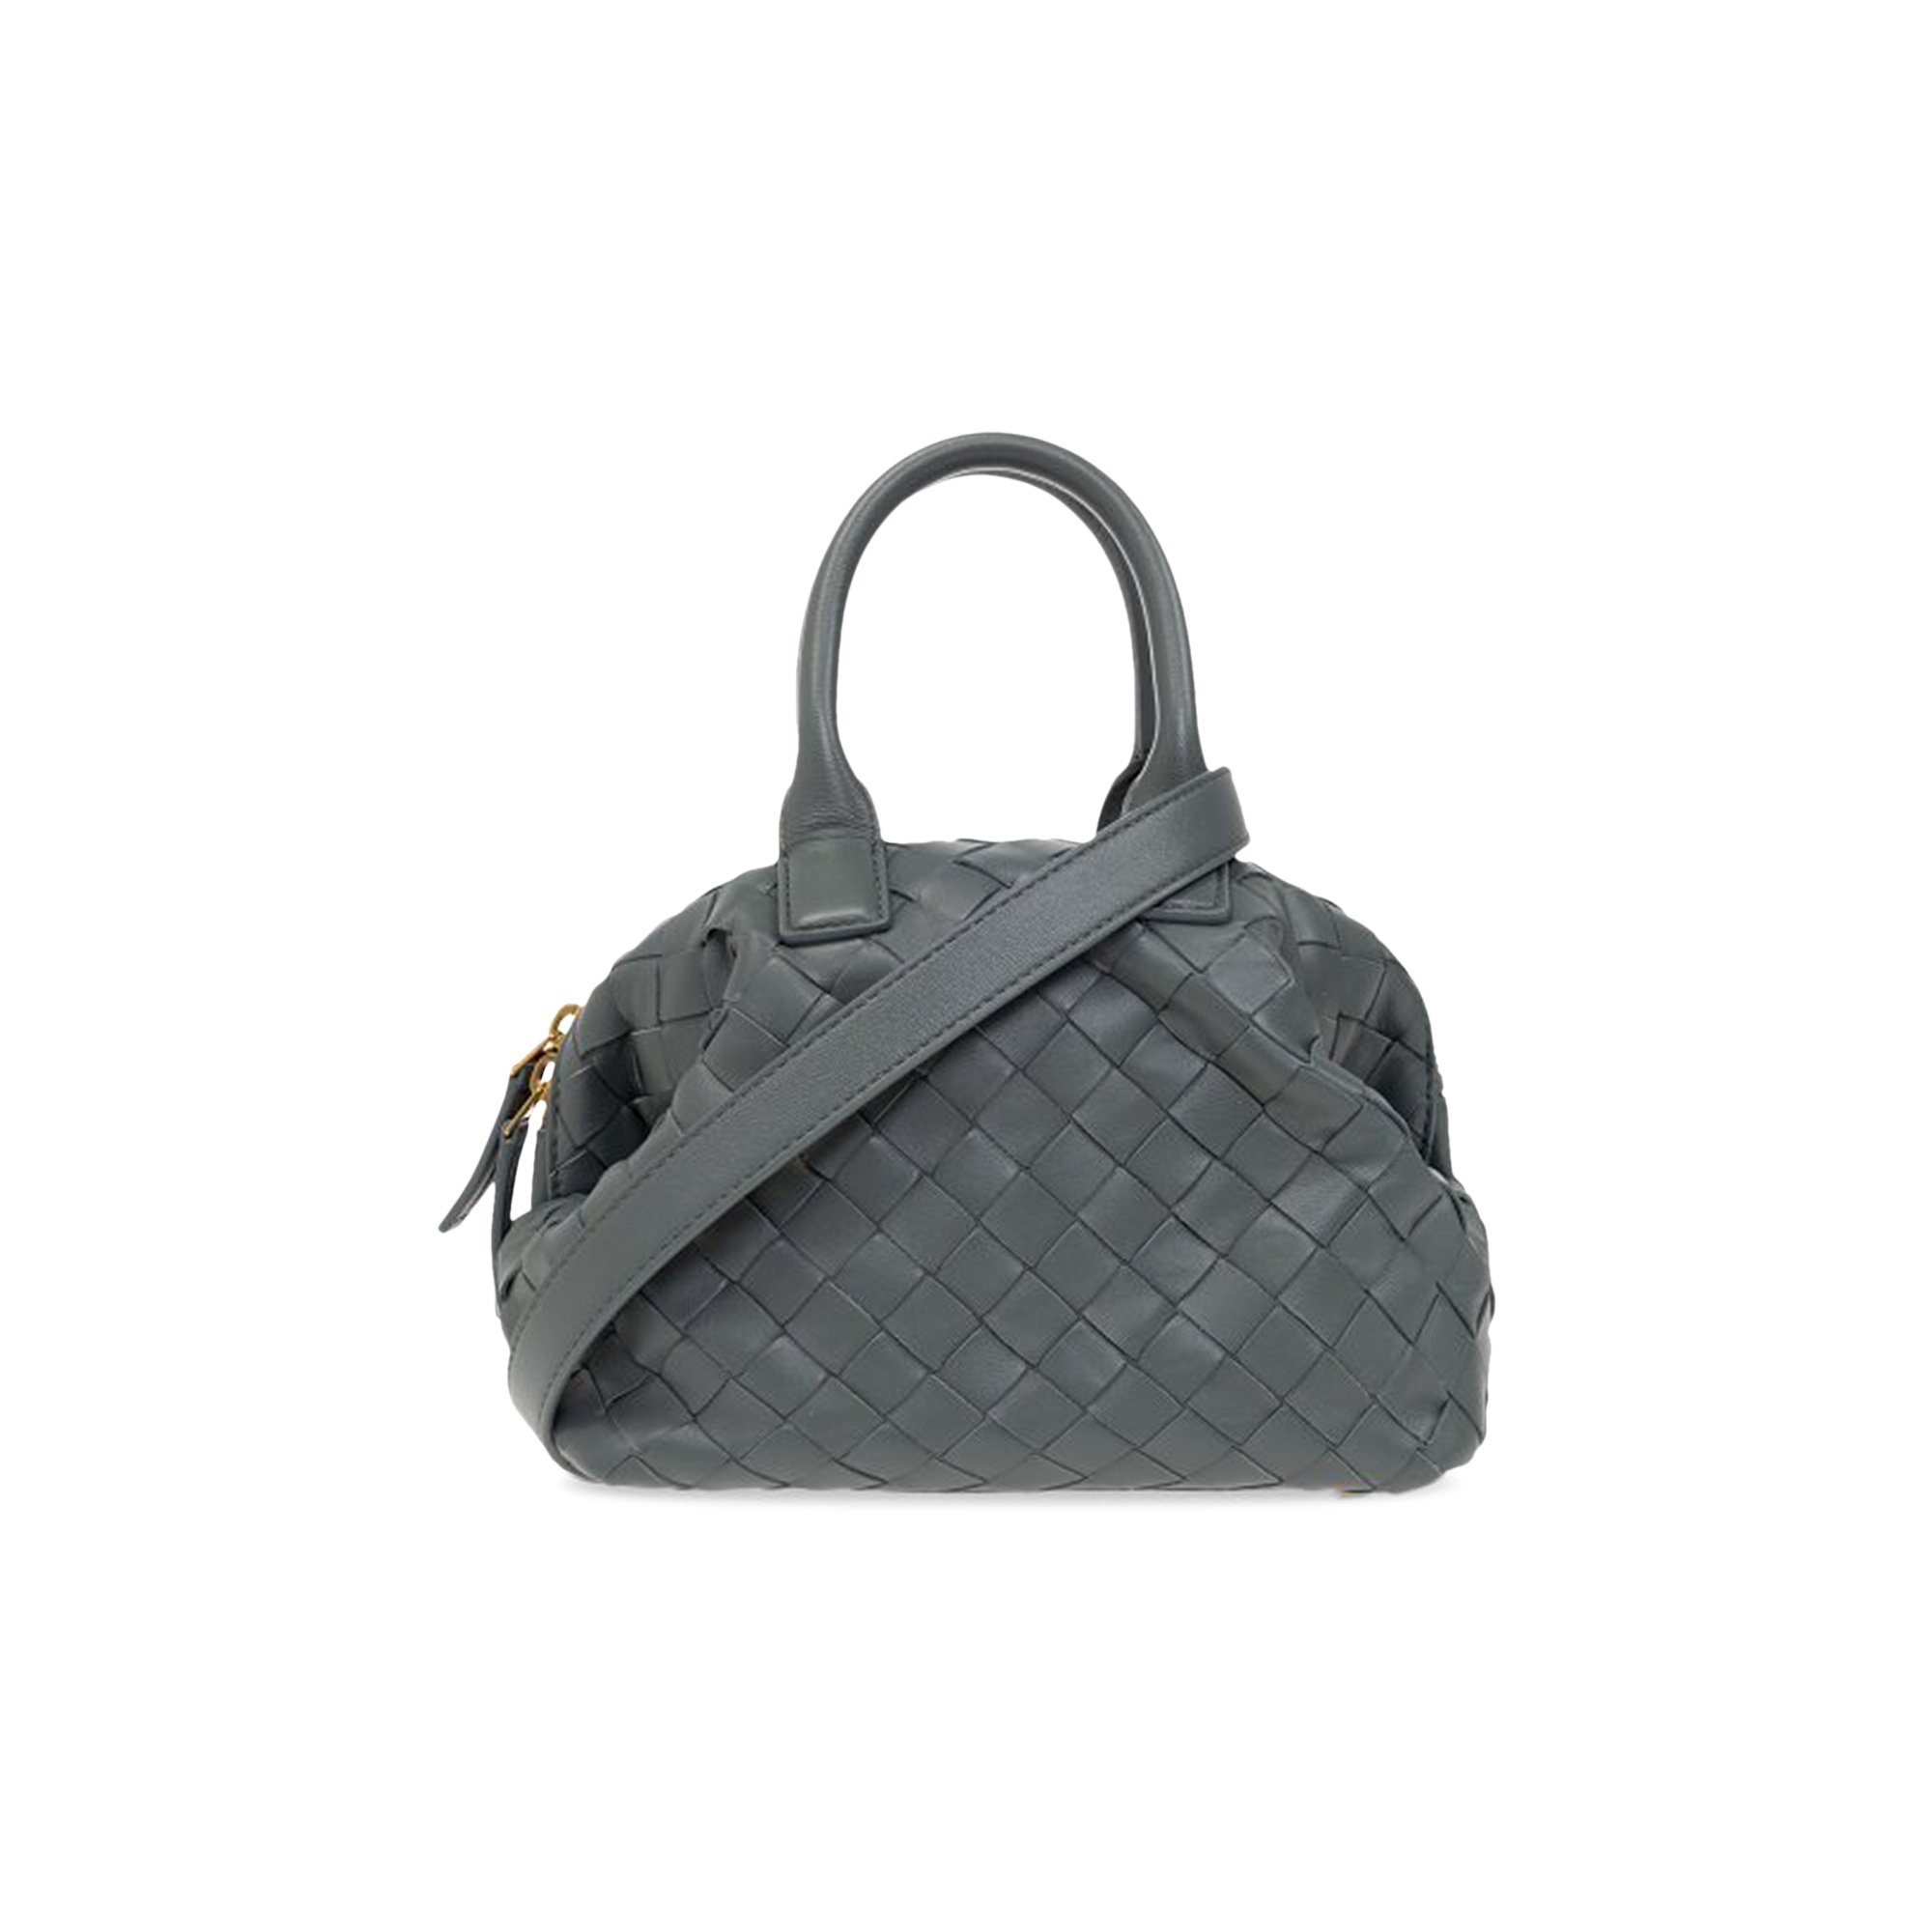 Buy Bottega Veneta Mini Bauletto Bag 'Slate' - 764535 VCPP1 1617 